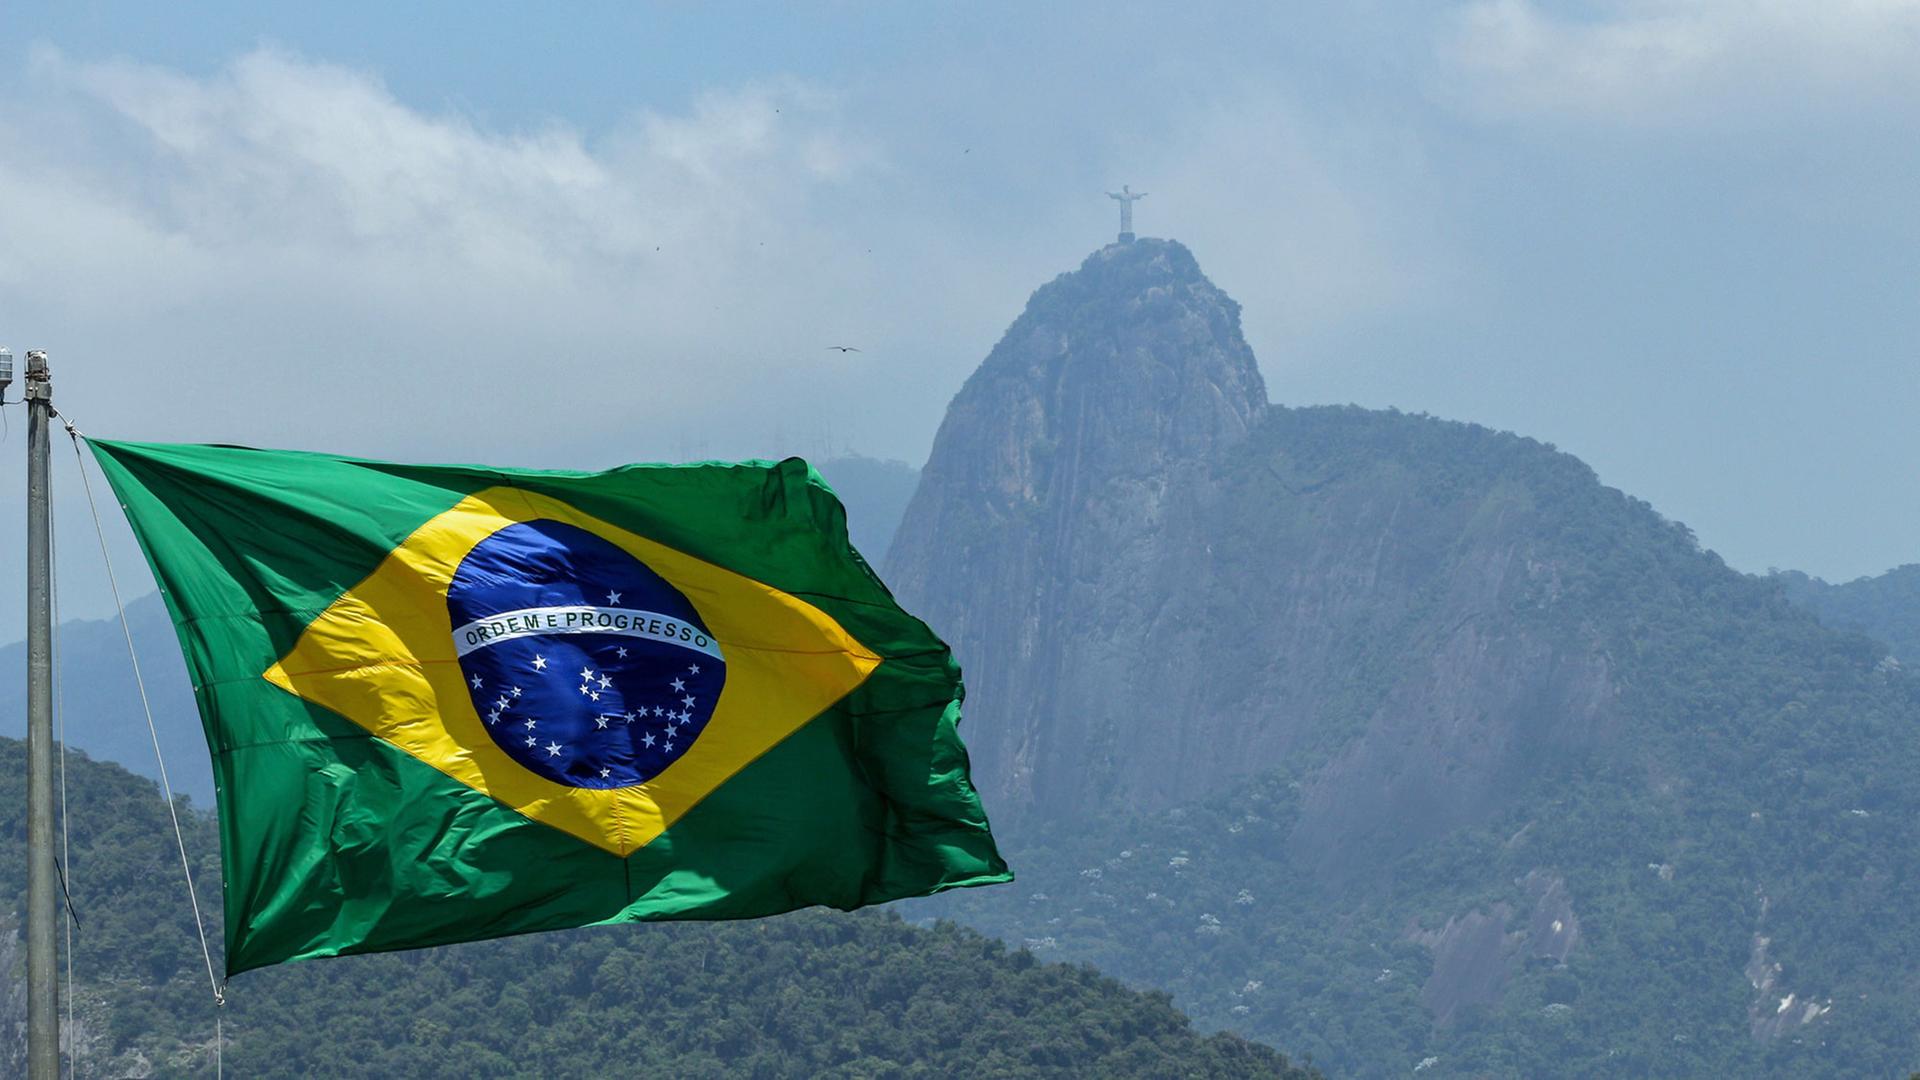 Die brasilianische Flagge. Im Hintergrund: Die monumentale Christusstatue Cristo Redentor auf dem Berg Corcovado in Rio de Janeiro, Brasilien